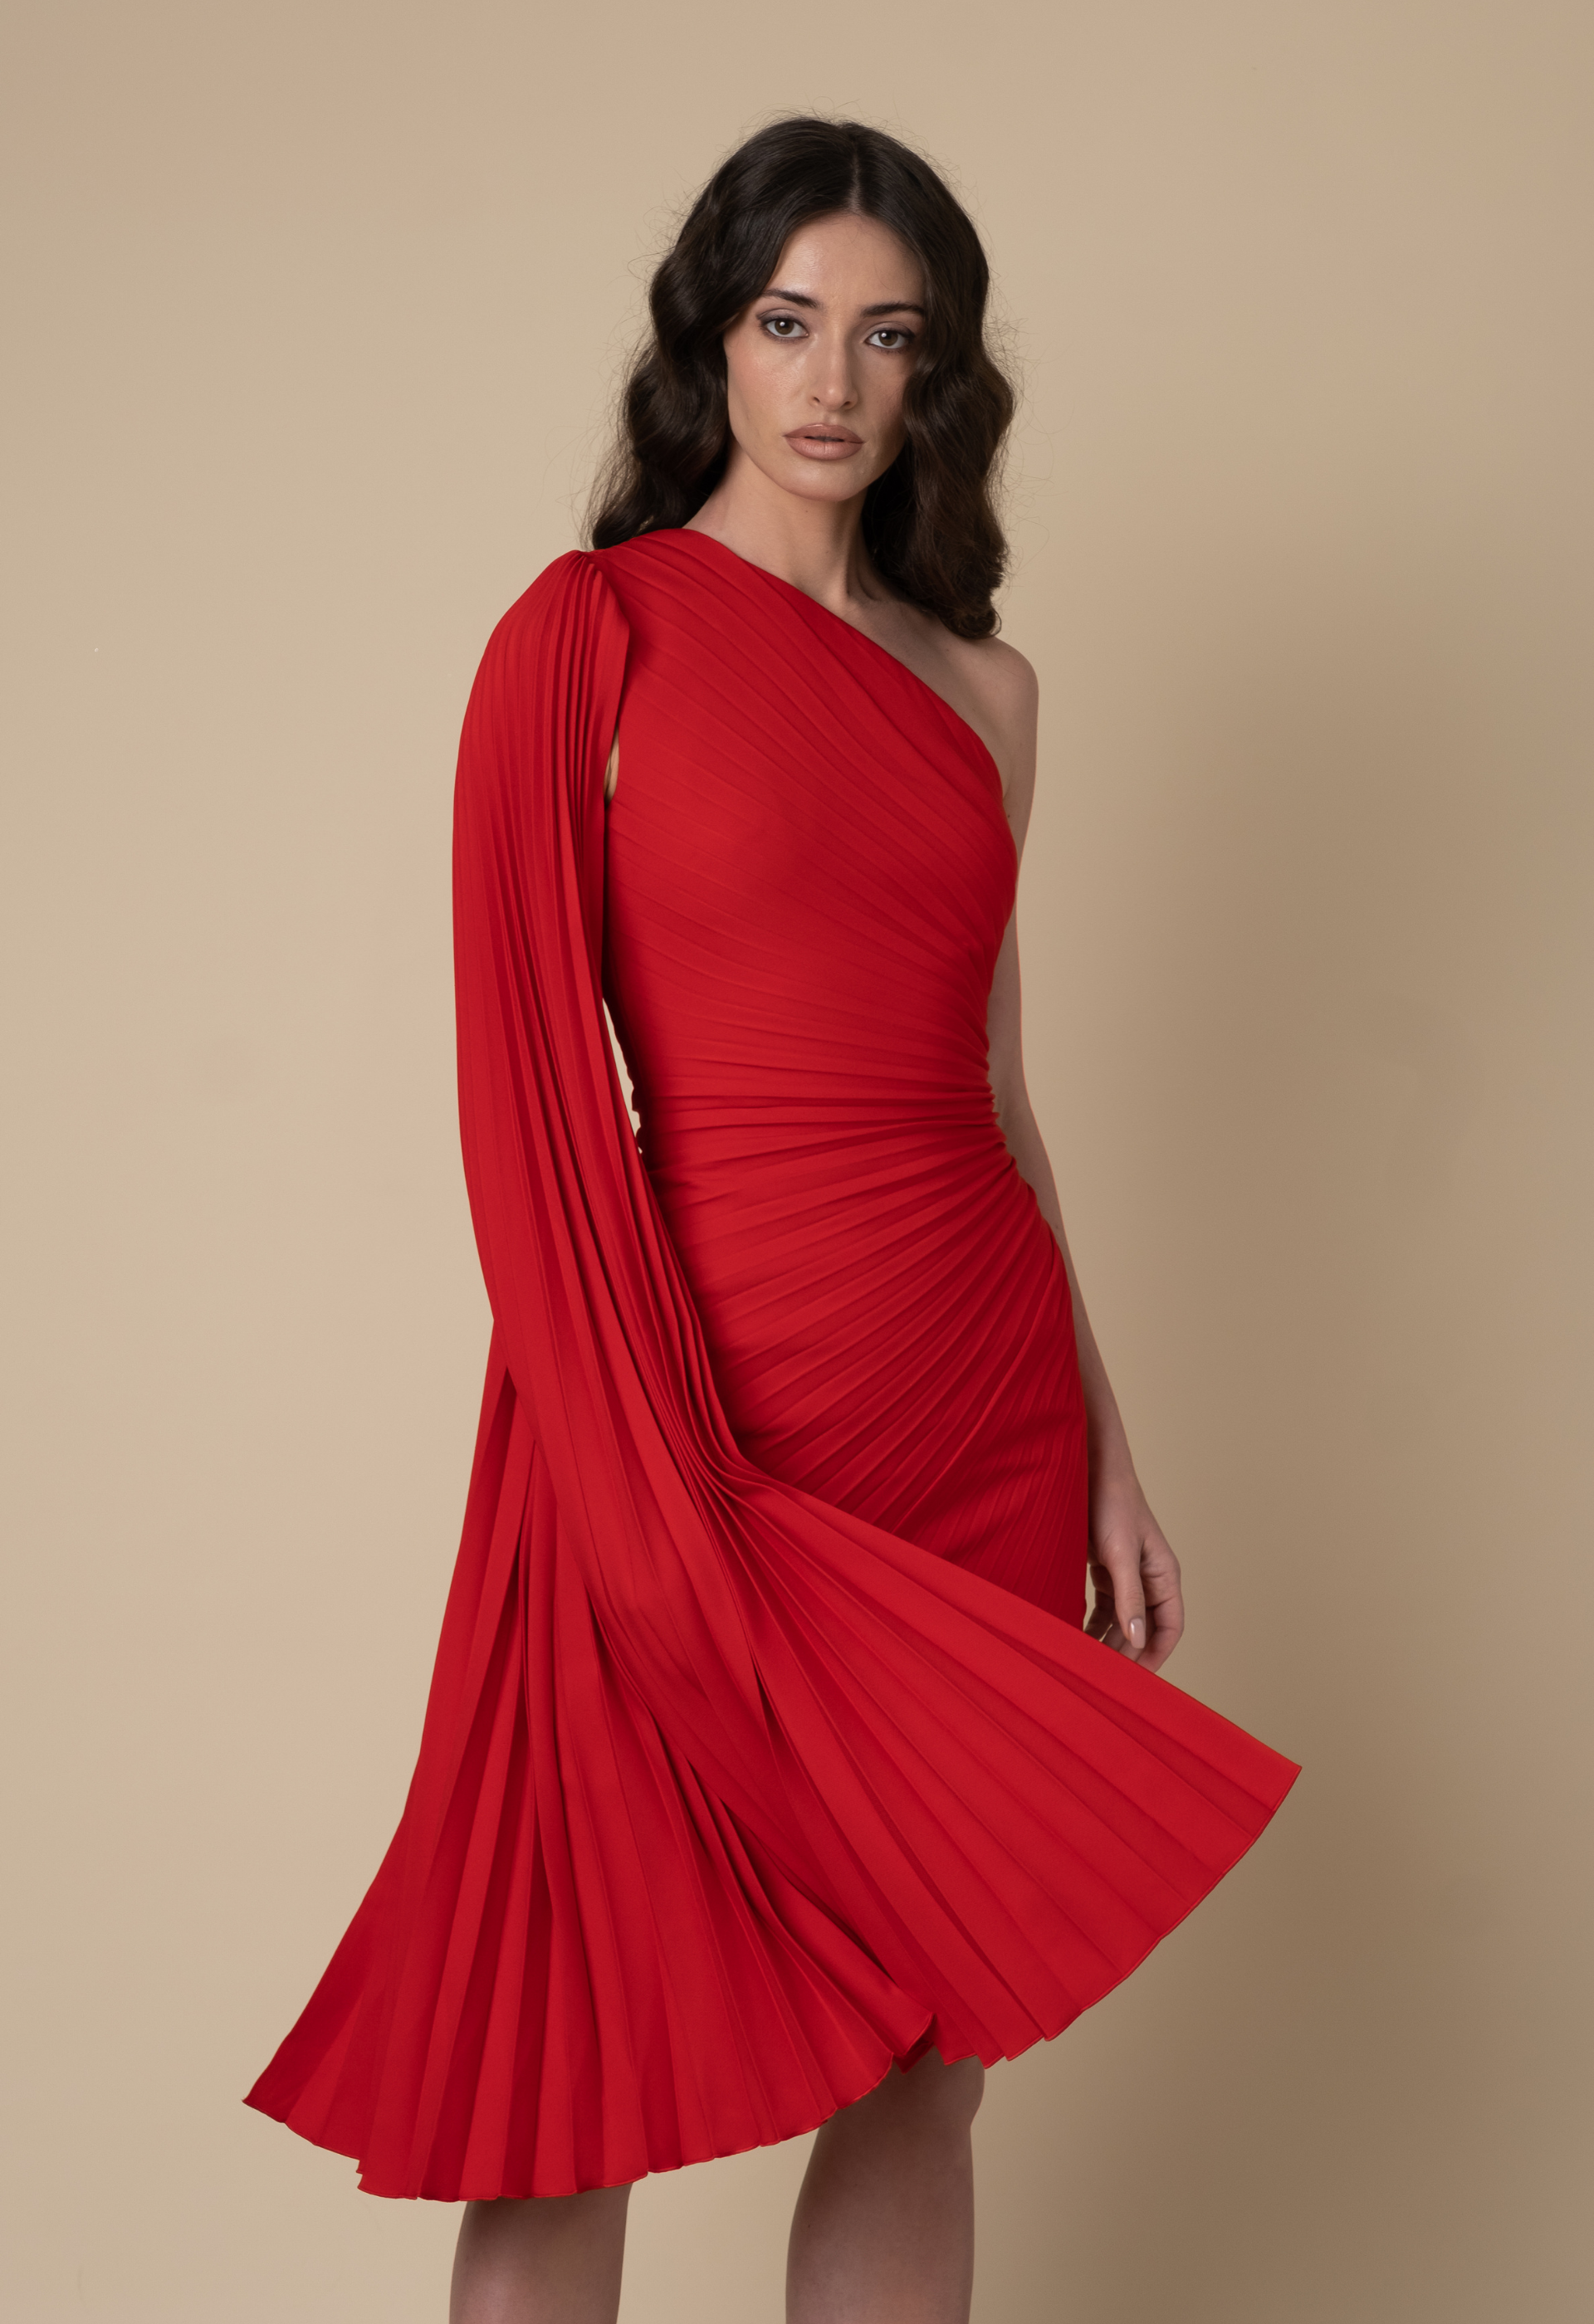 فستان كريب مع كاب بالكسرات باللون الأحمر